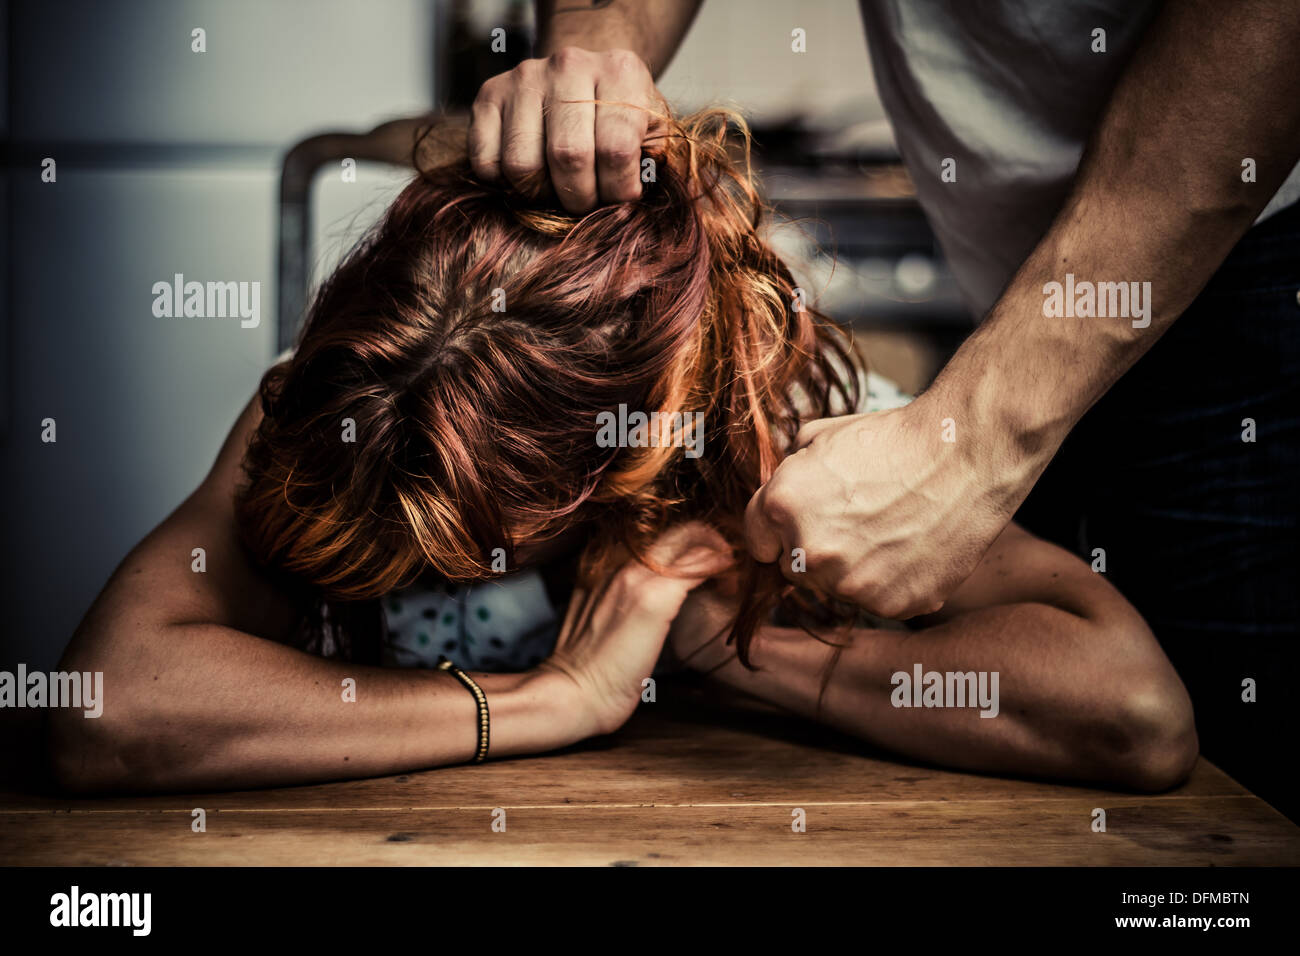 El hombre tirando del cabello de su esposa y amenazando a puñetazos Foto de stock